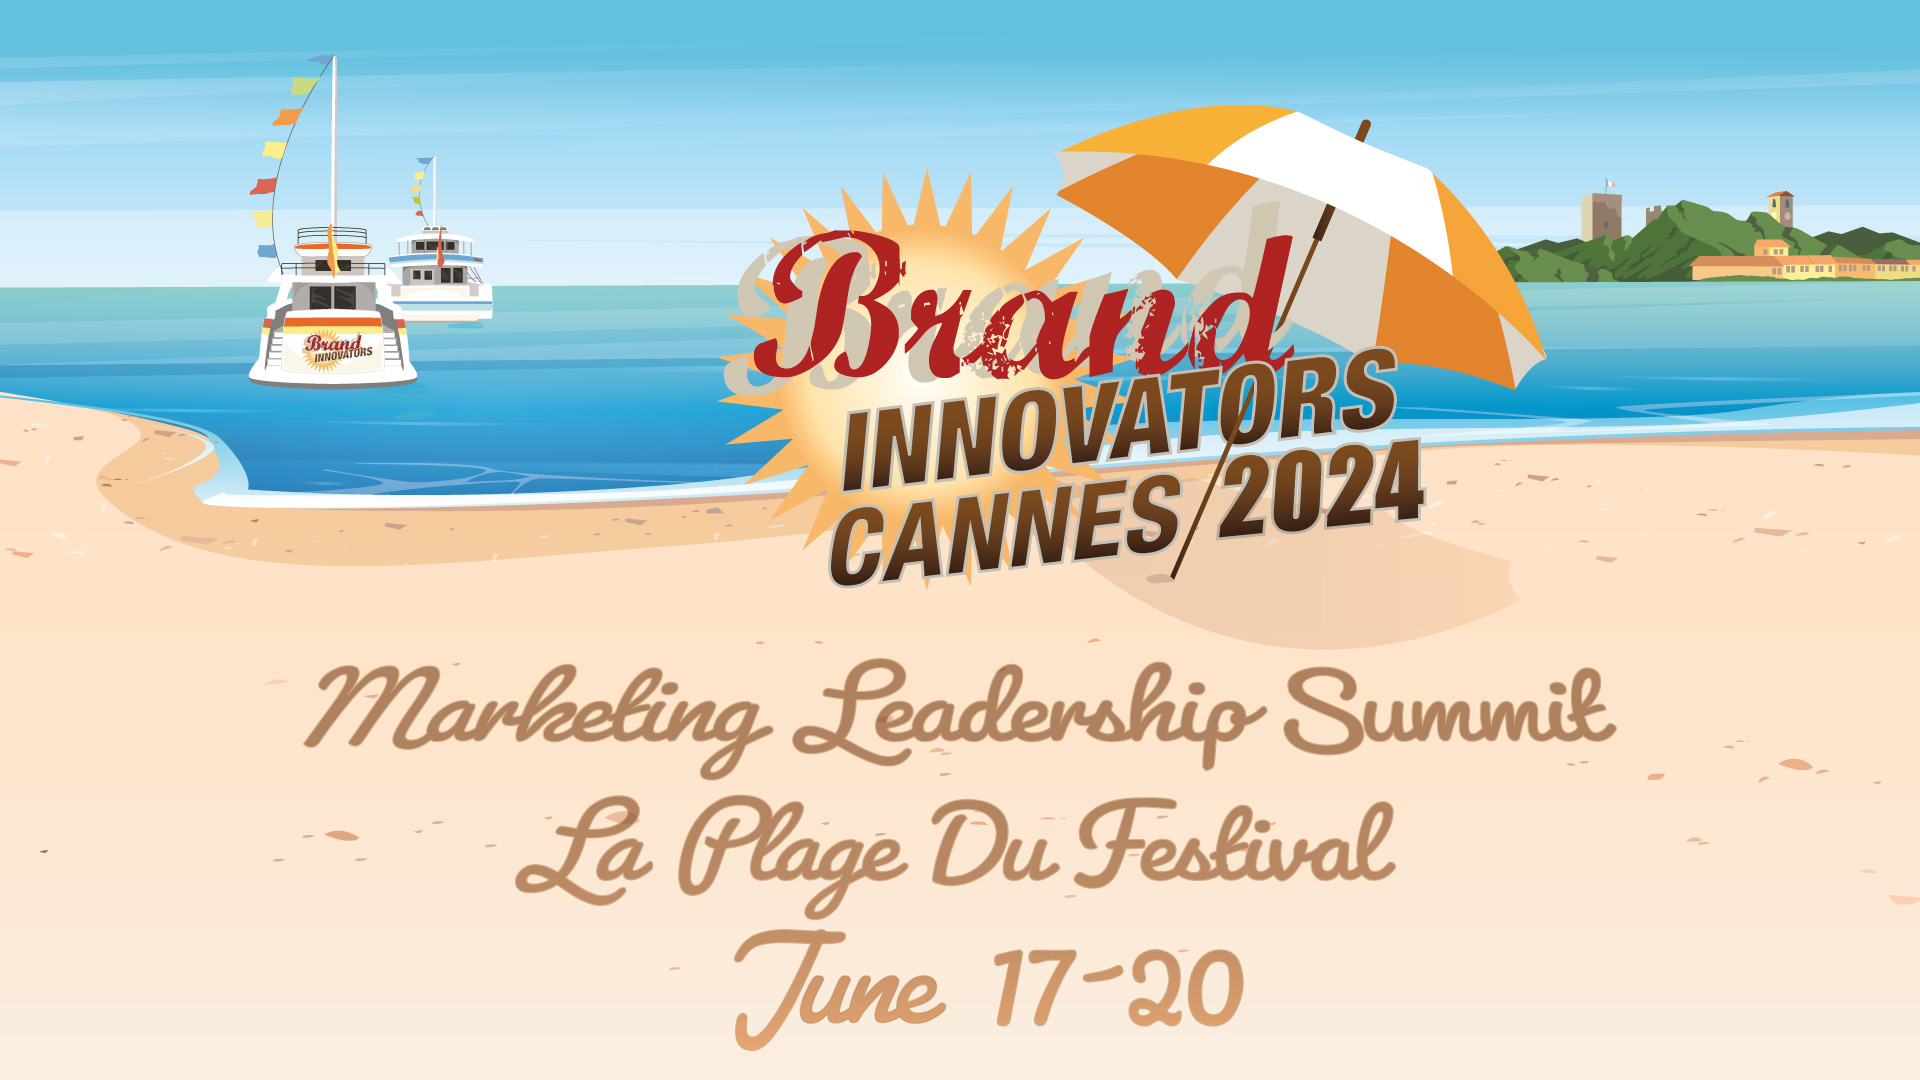 Marketing Leadership Summit Cannes Brand Innovators